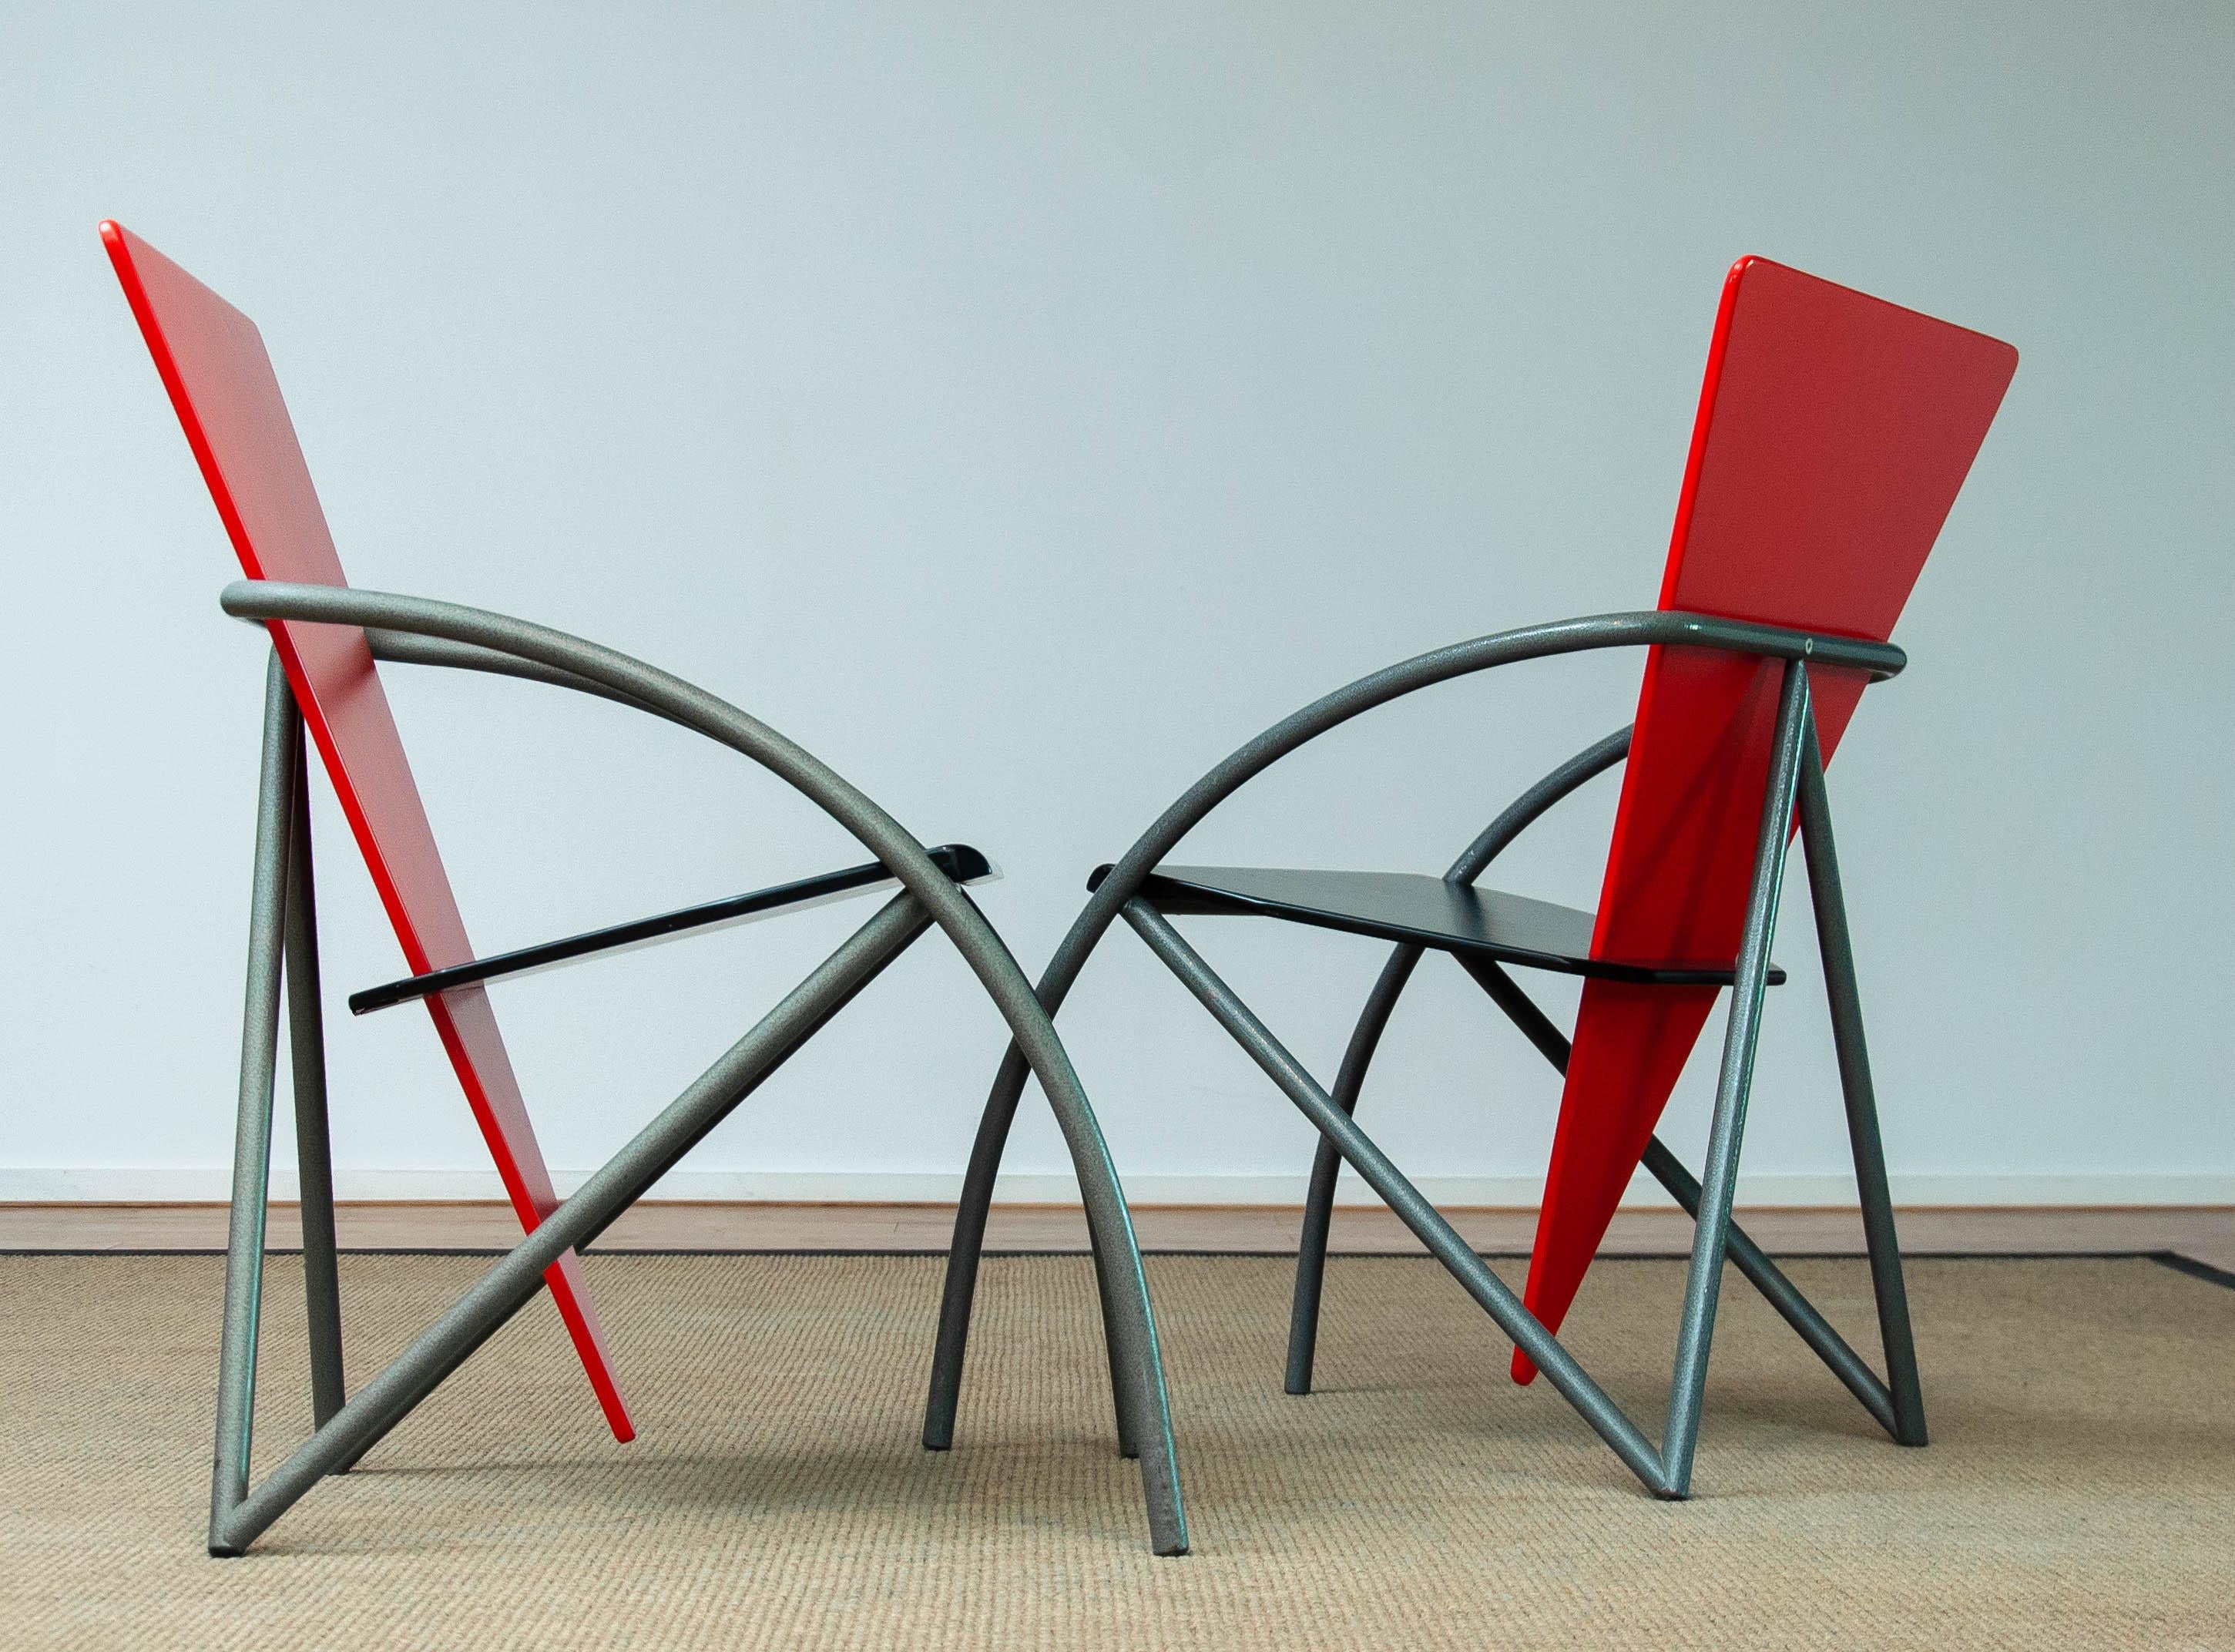 Ces chaises de salle à manger / de bureau extrêmement rares sont un excellent exemple de la période post-moderne et constituent une déclaration de design à l'époque du début des années 80. Ces 